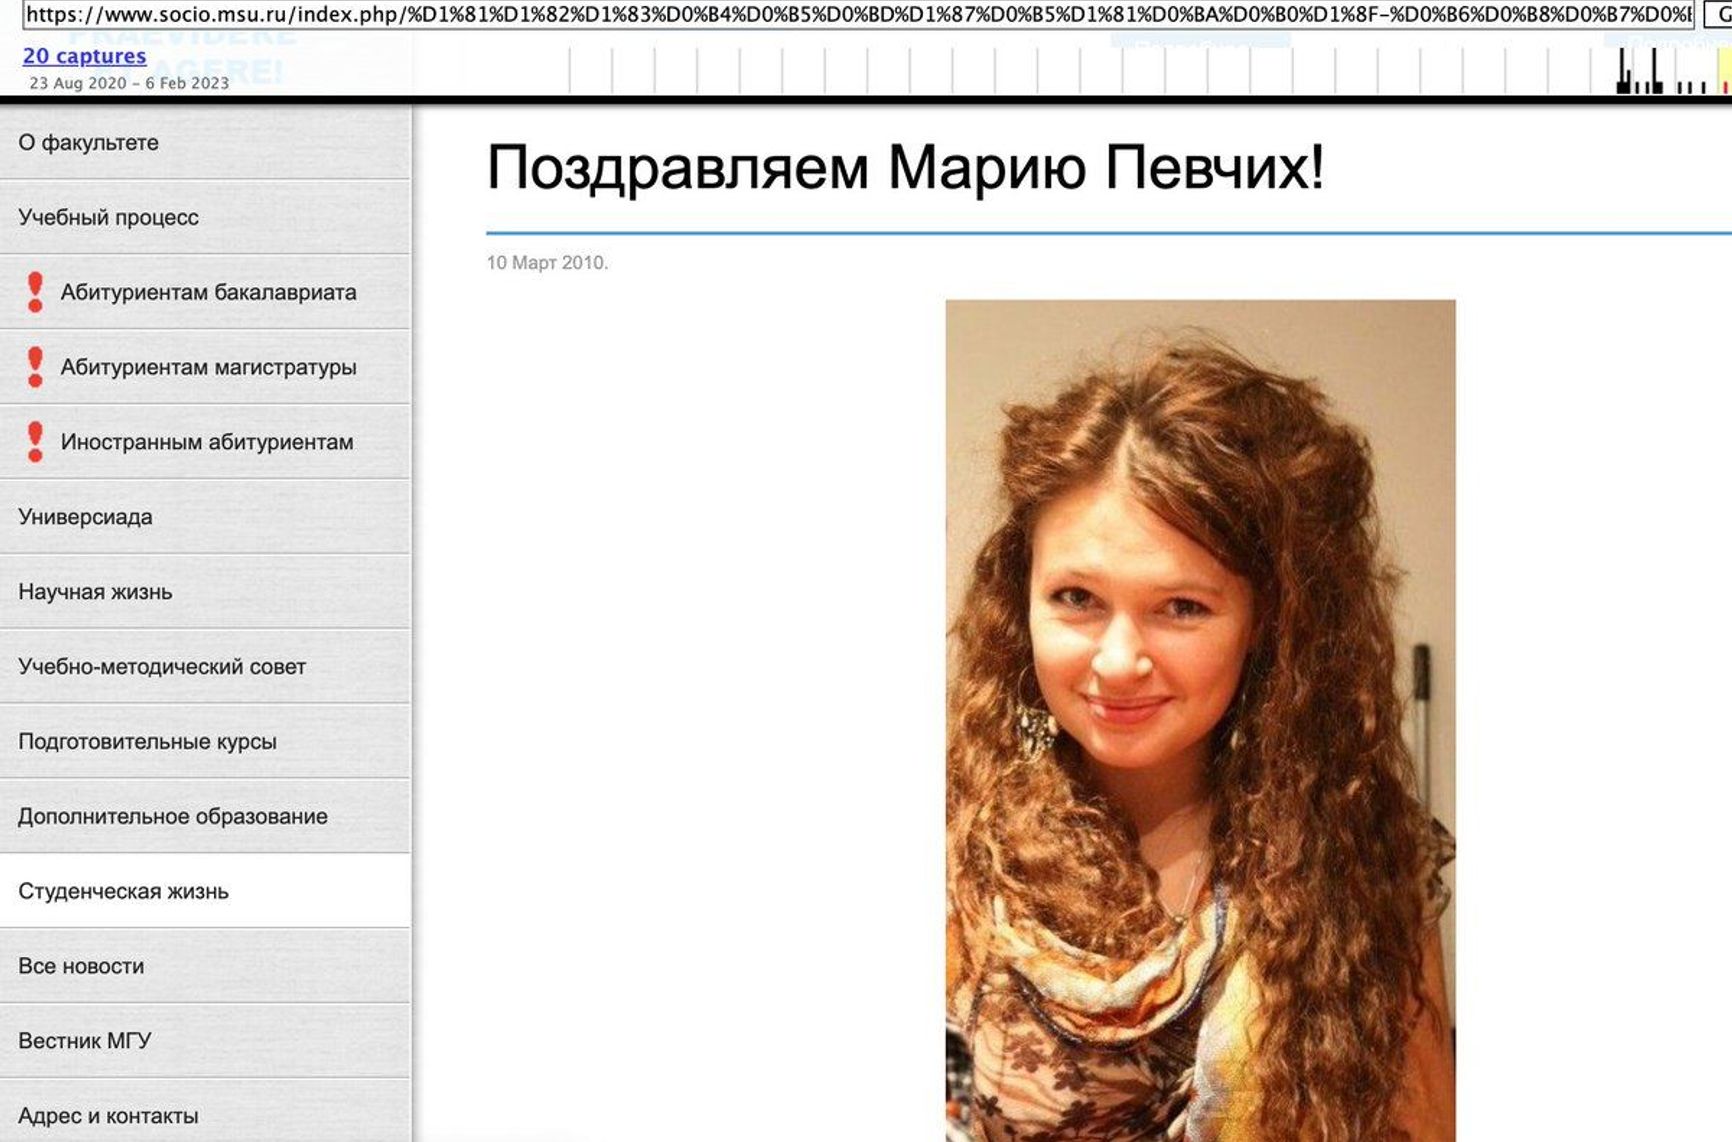 МГУ удалил страницу с упоминанием Марии Певчих со своего сайта. Фотография была показана в интервью у Дудя 